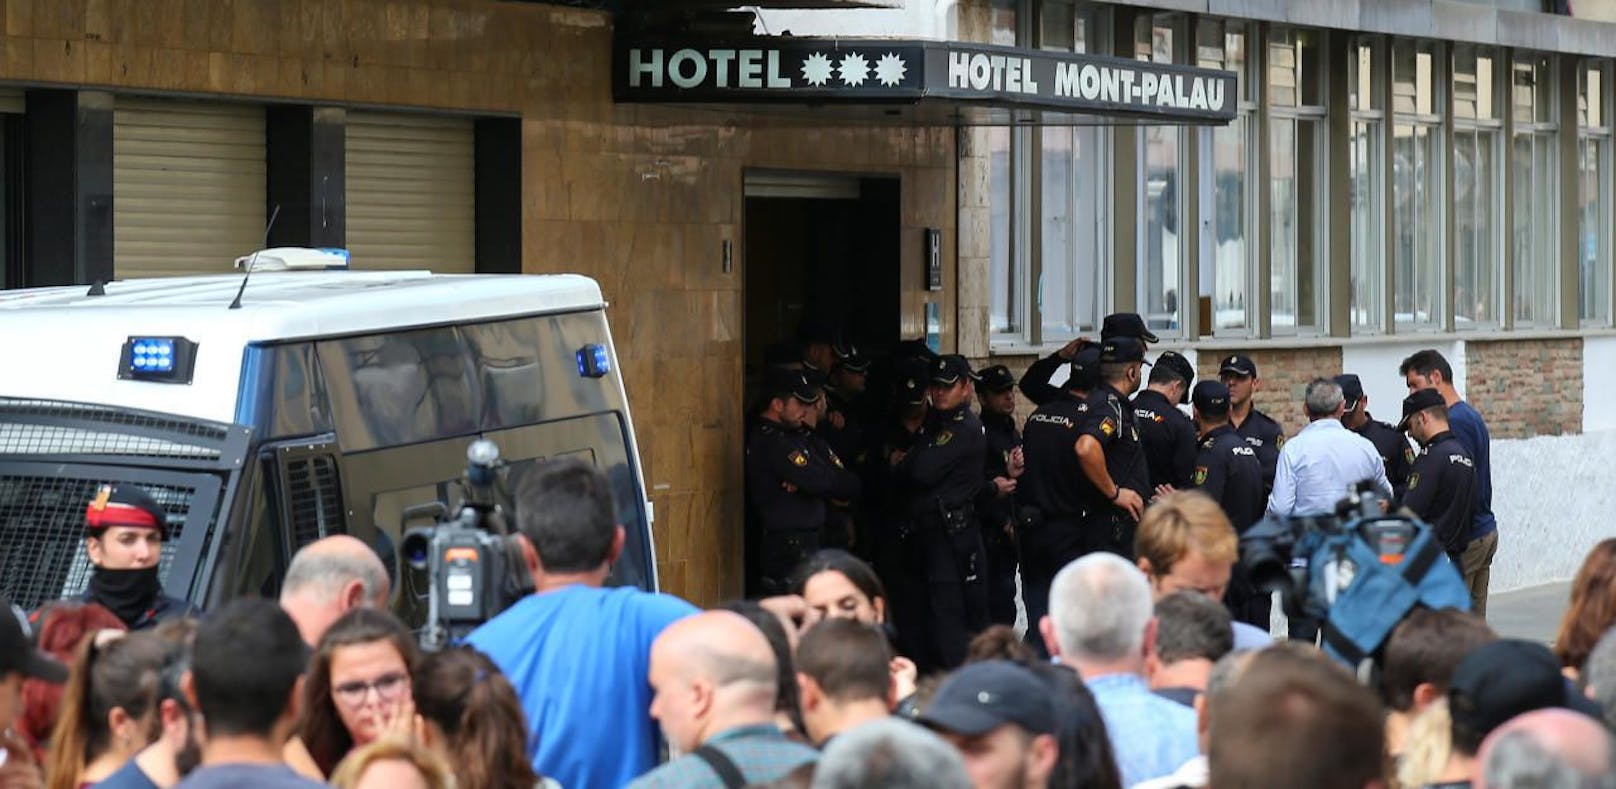 Demonstranten vor dem Hotel in Pineda de Mar, in dem Angehörige der Nationalen Polizei untergebracht sind.